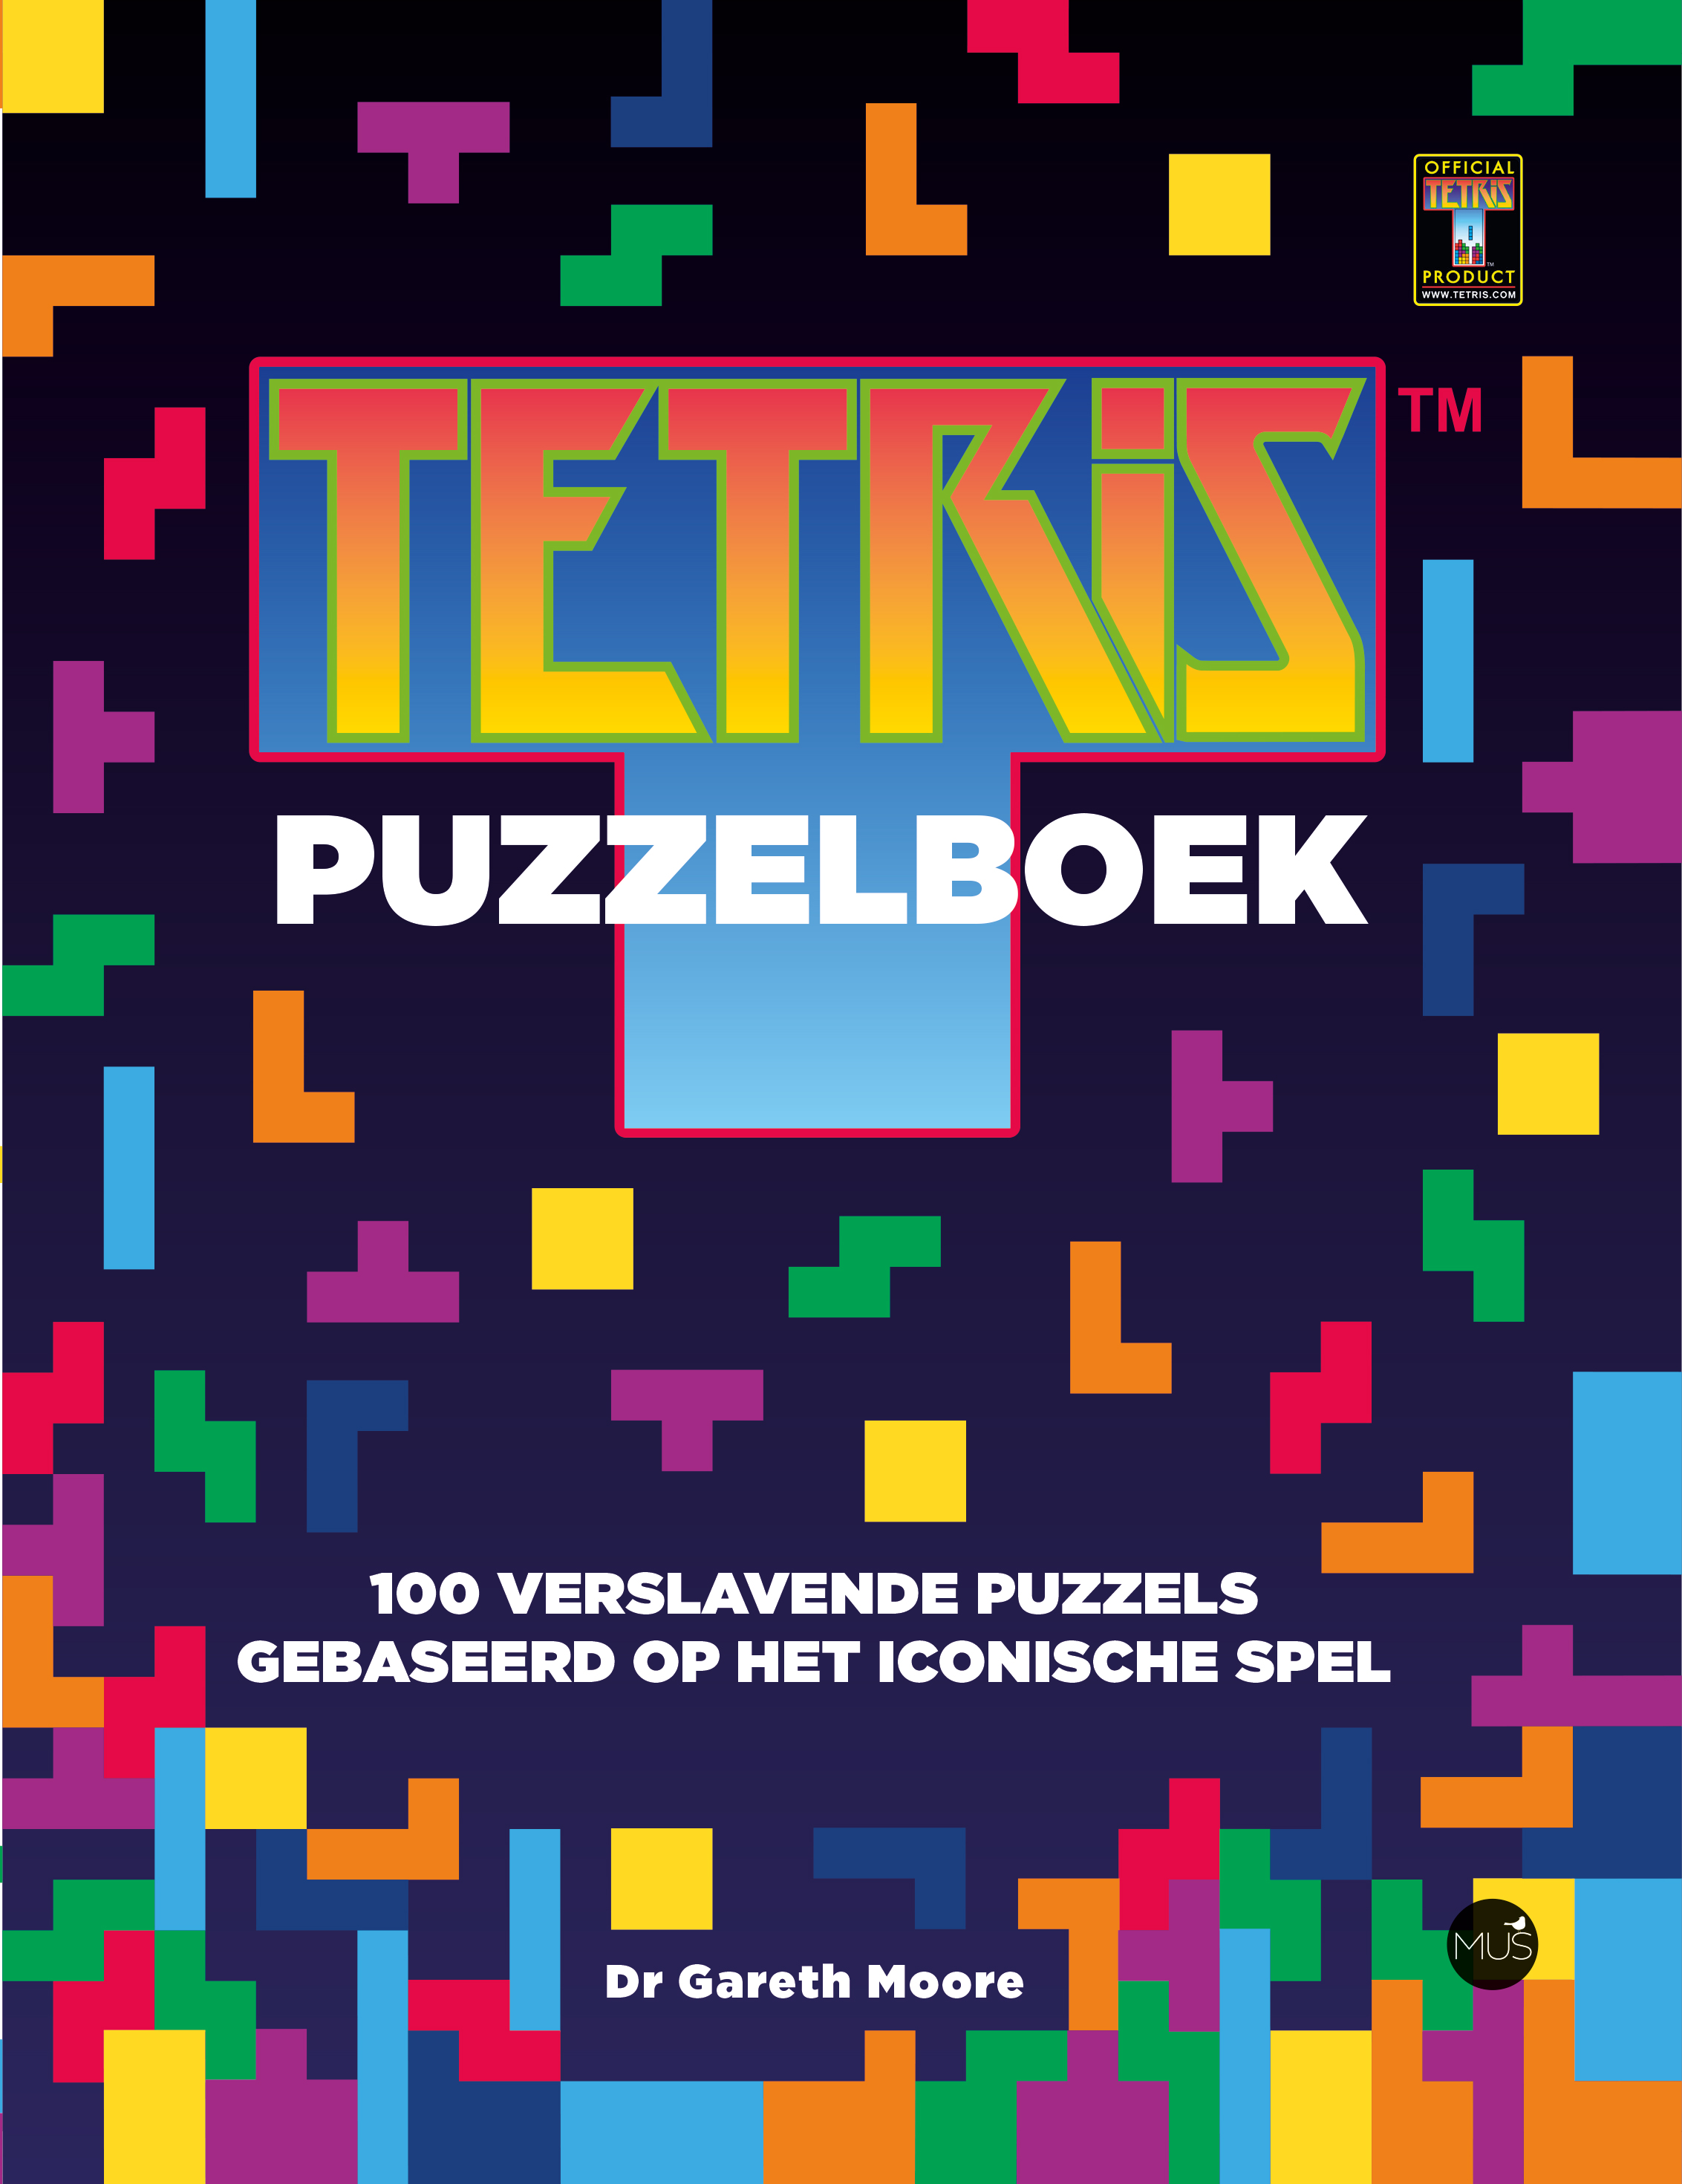 Tetris puzzelboek